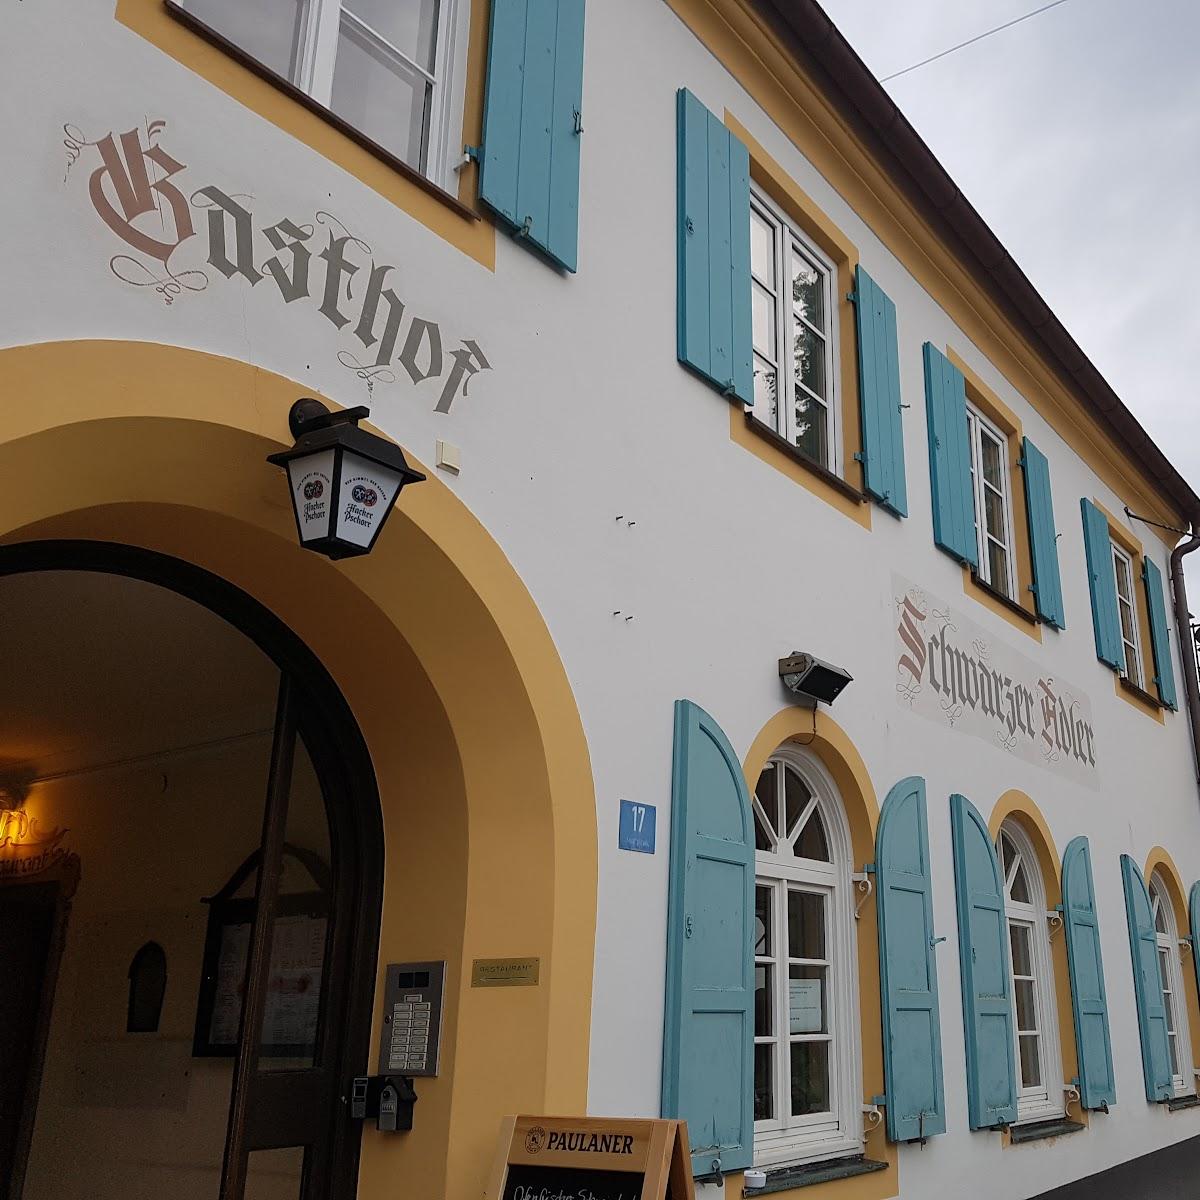 Restaurant "Bistro Schwarzer Adler" in Bad Kohlgrub